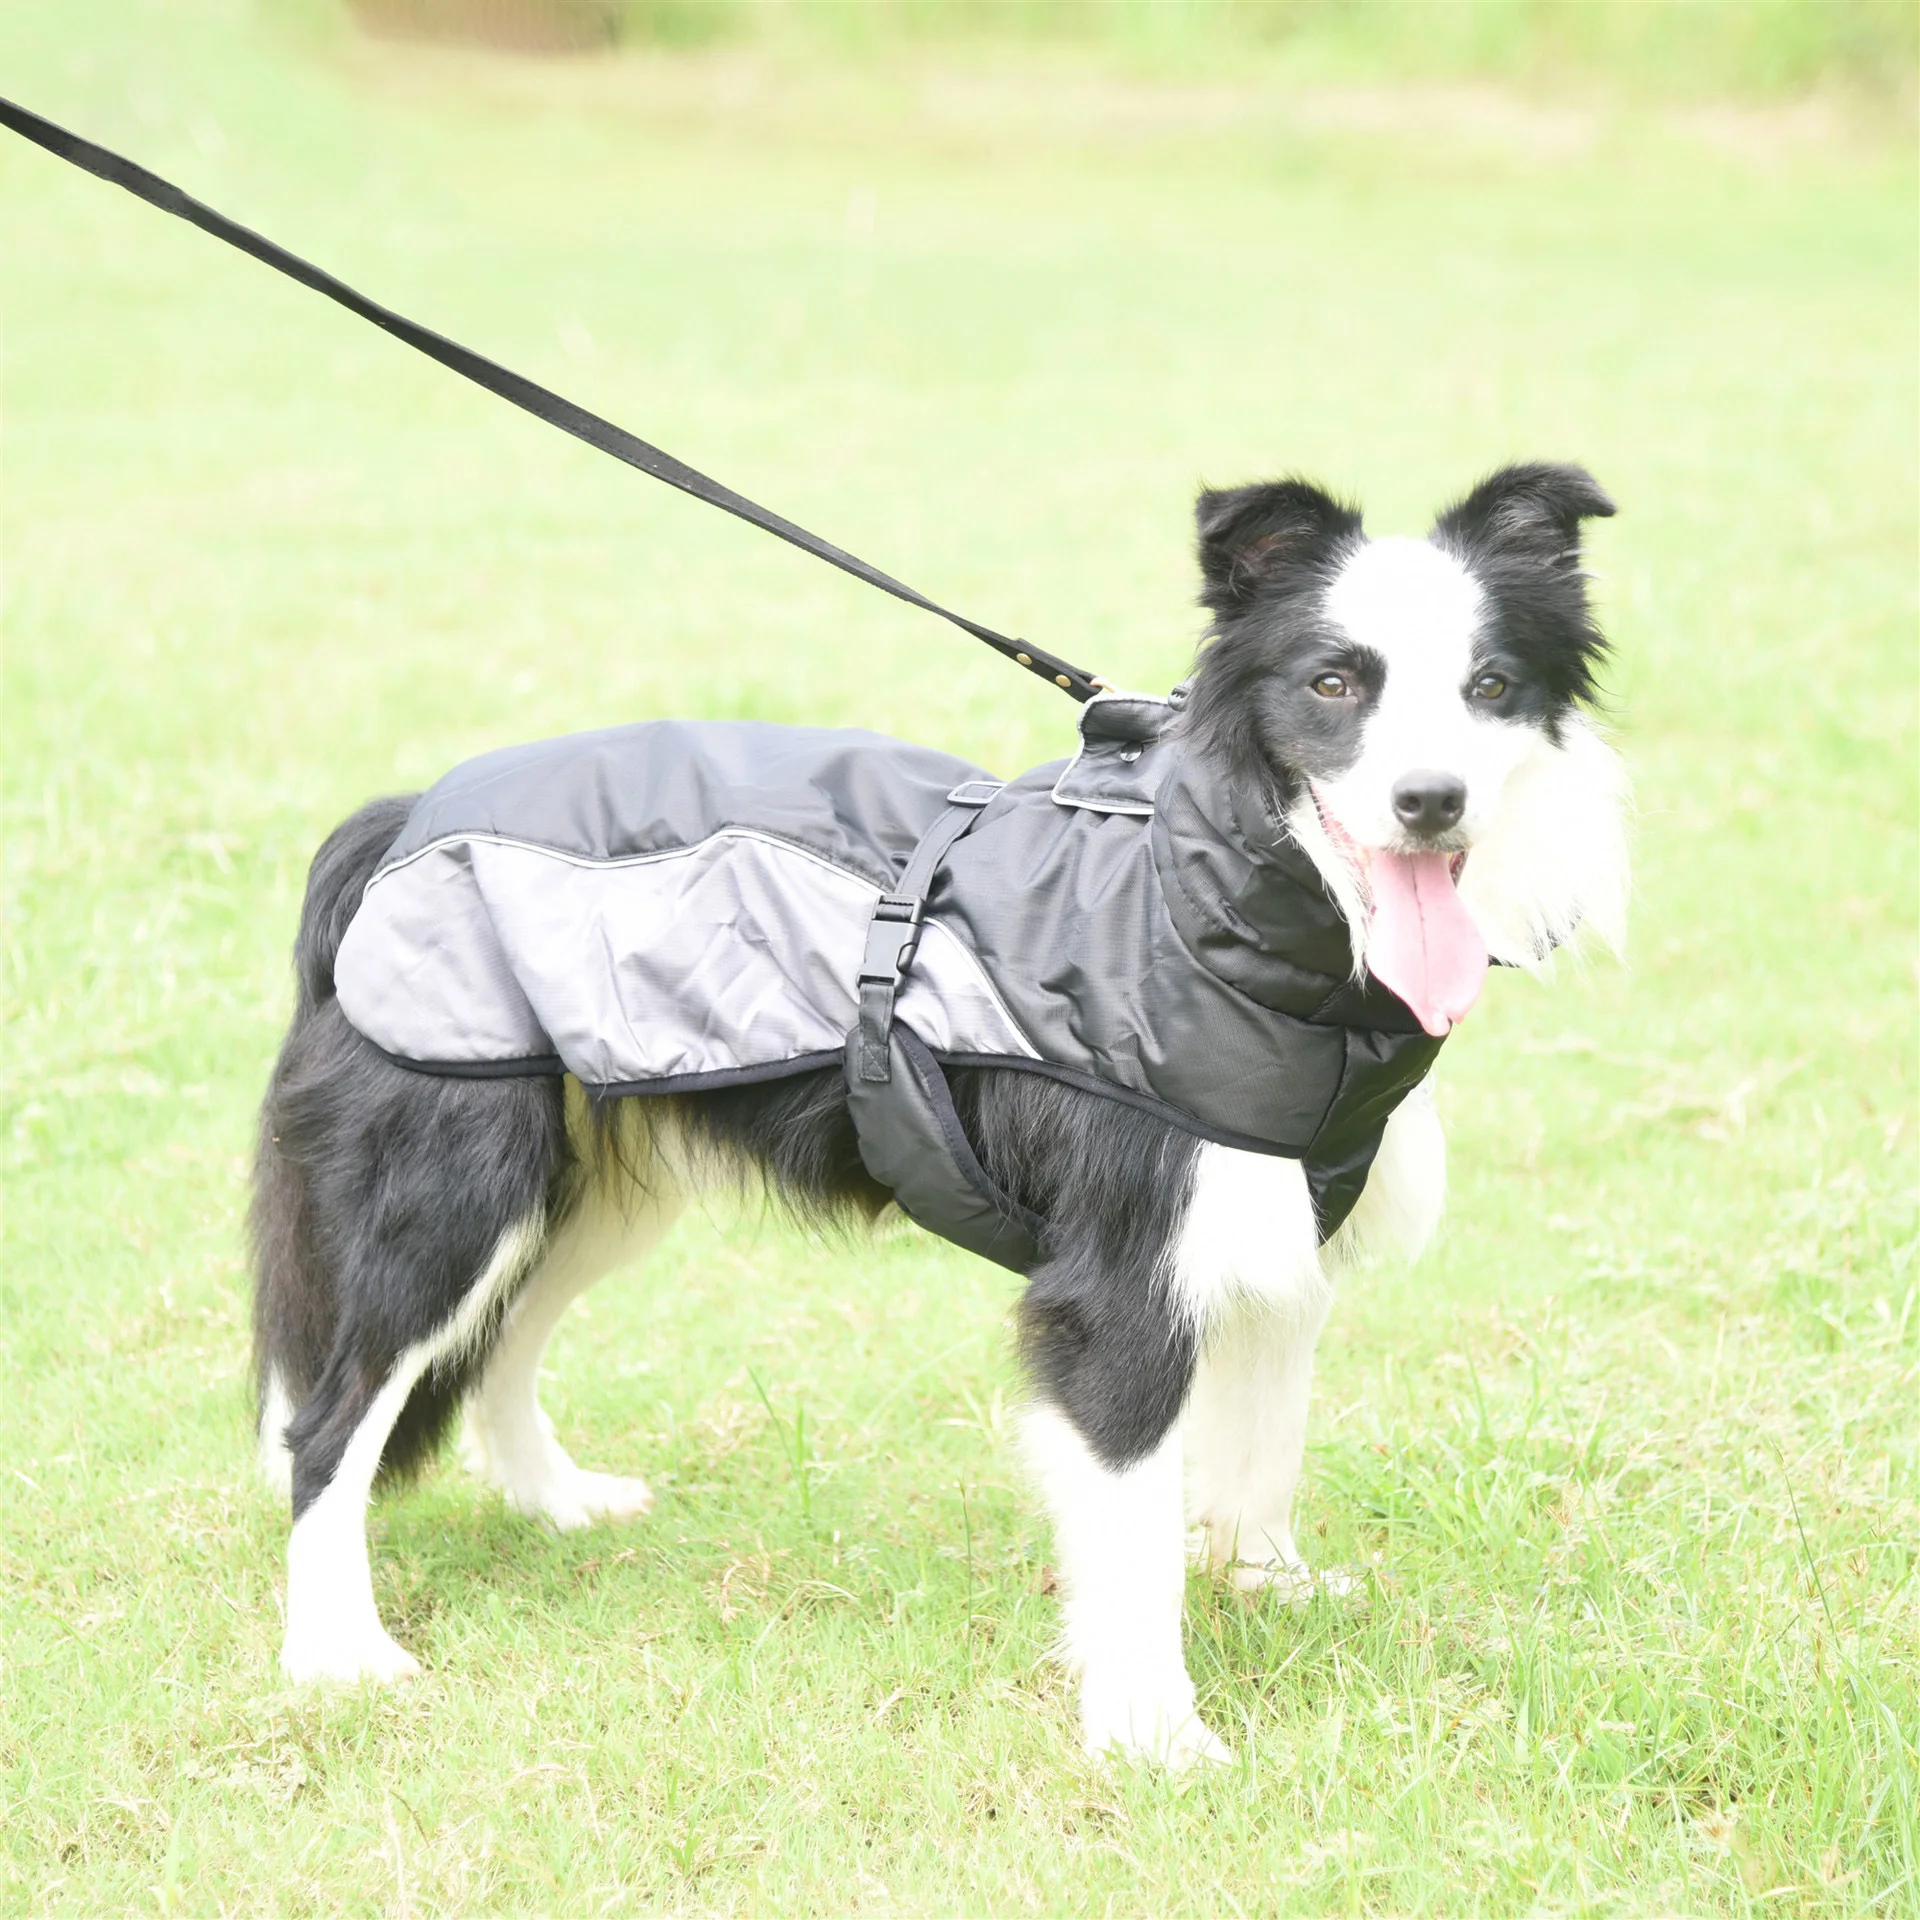 Waterproof Big Dog Clothes Warm Large Dog Coat Jacket Reflective Raincoat Clothing For Medium Large Dogs French Bulldog XL-6XL